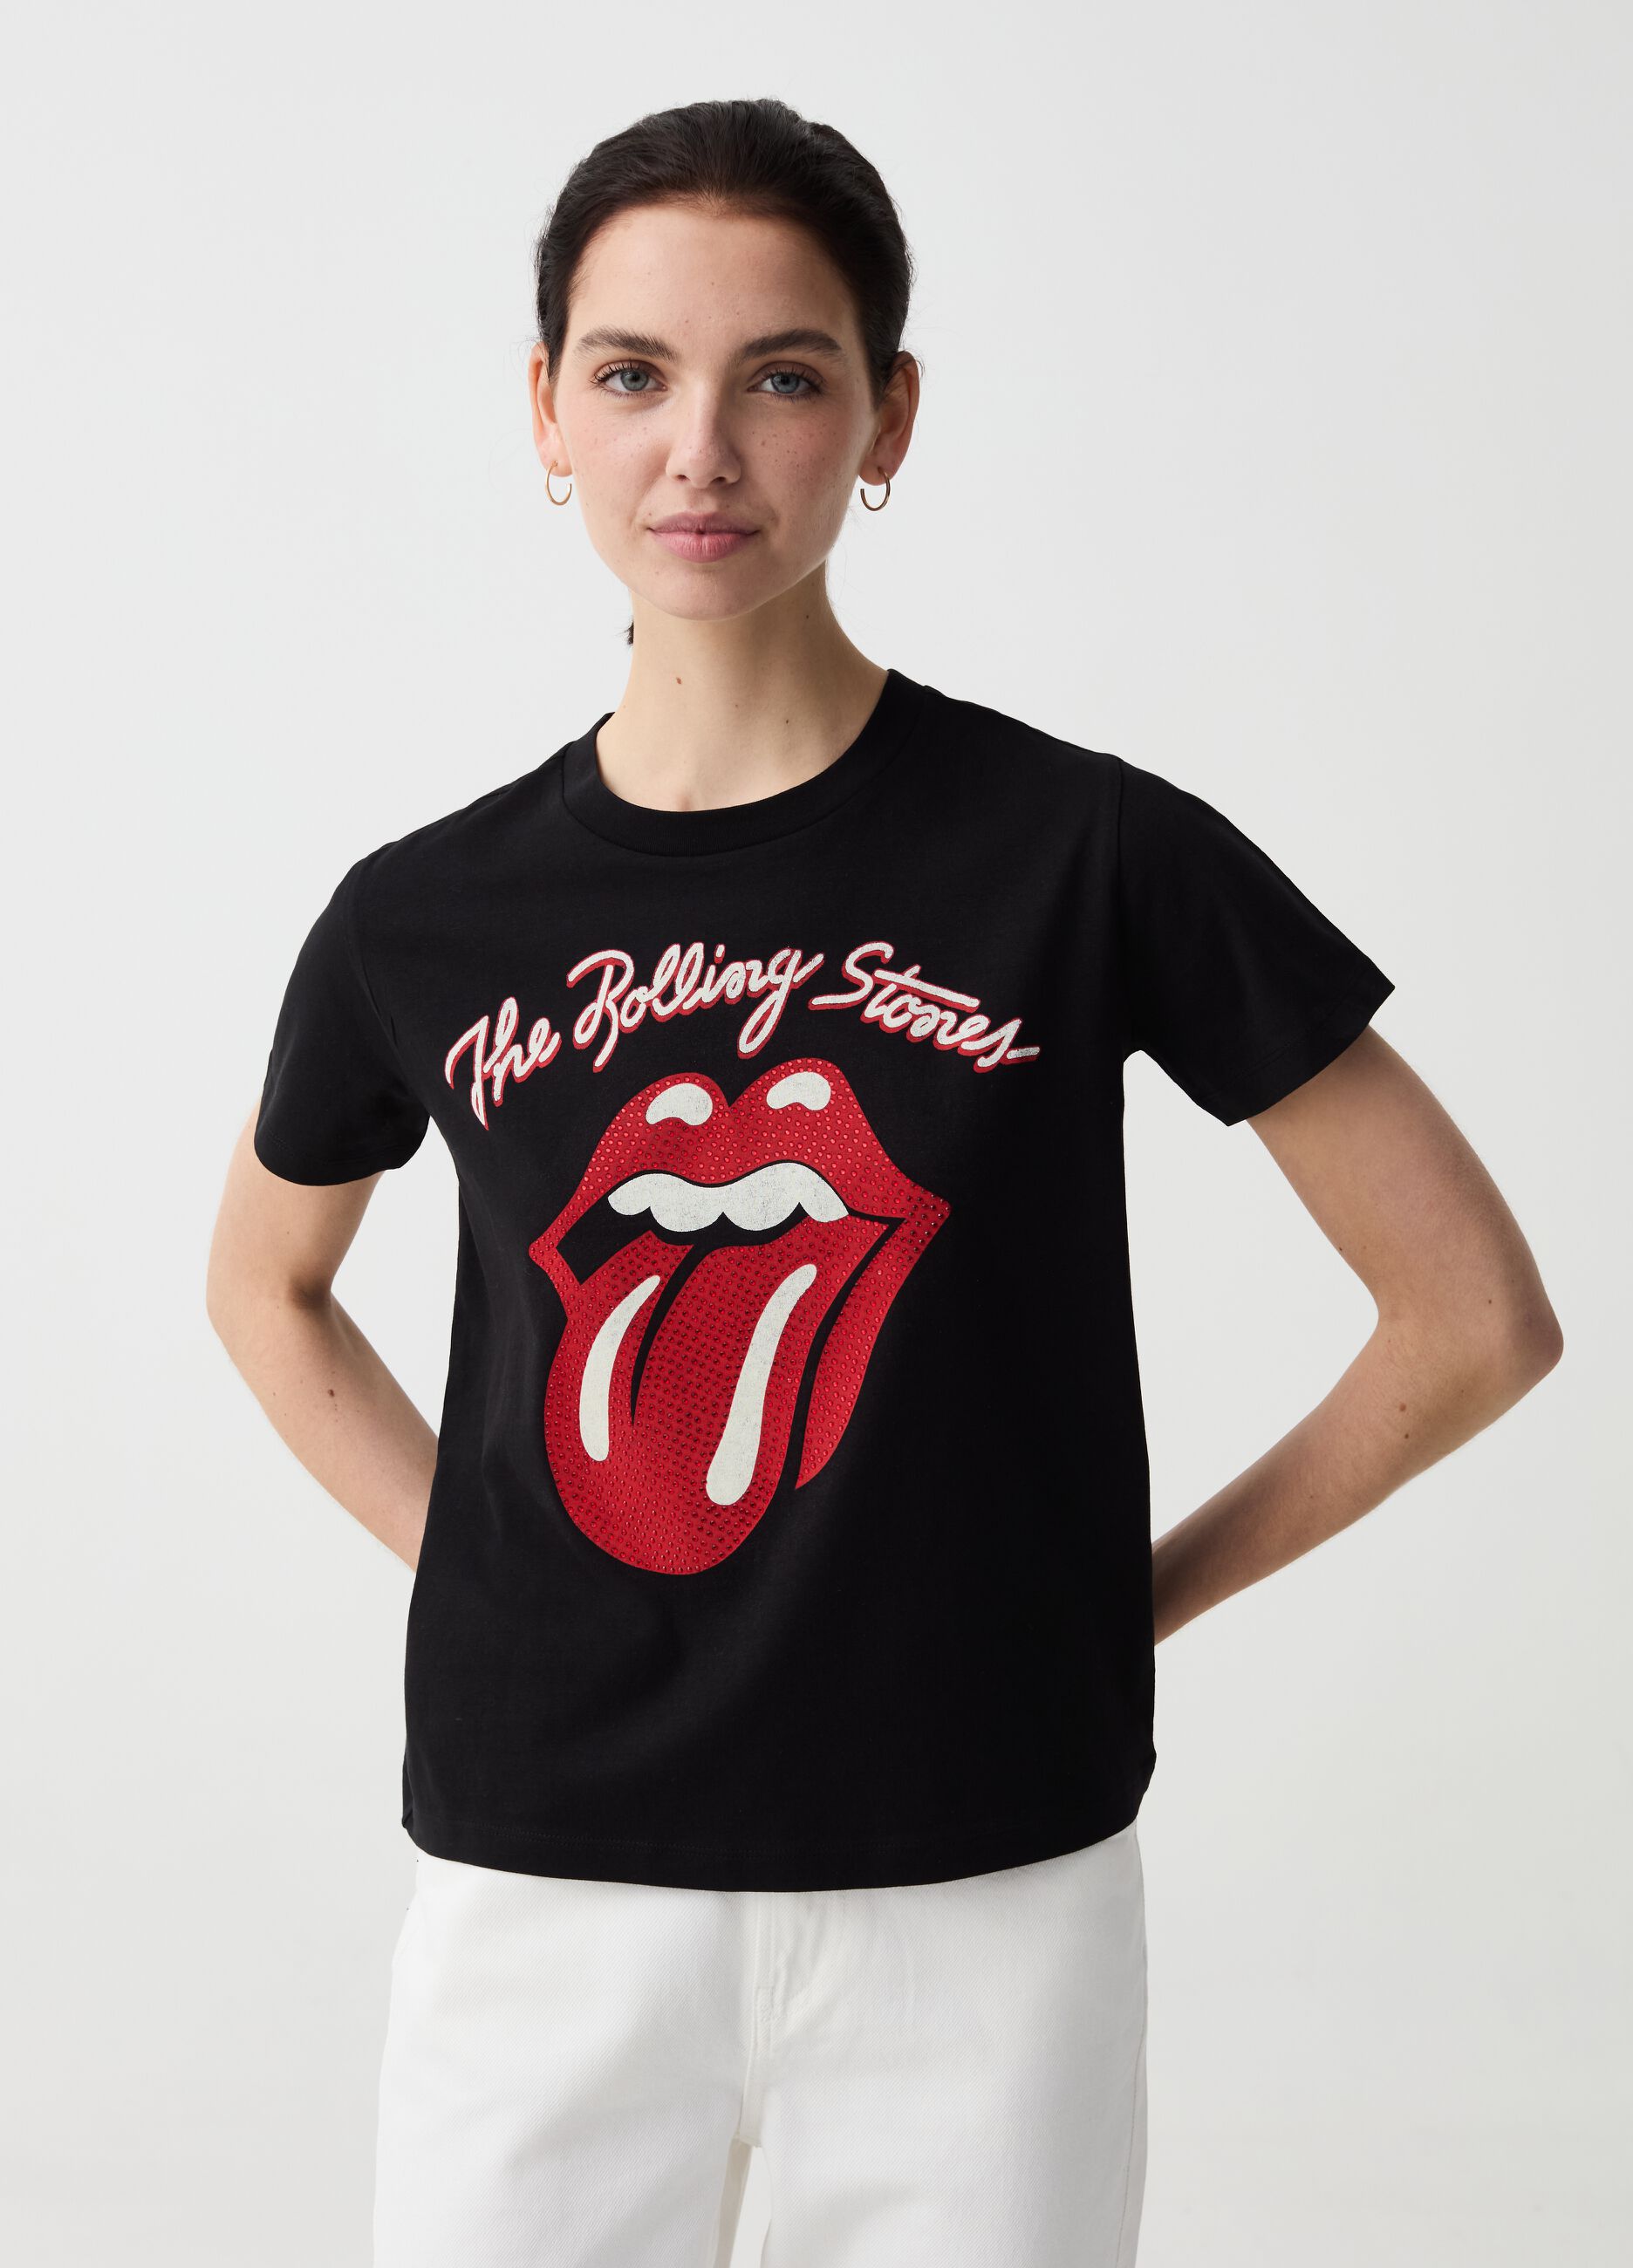 Camiseta estampado logo Rolling Stones con strass